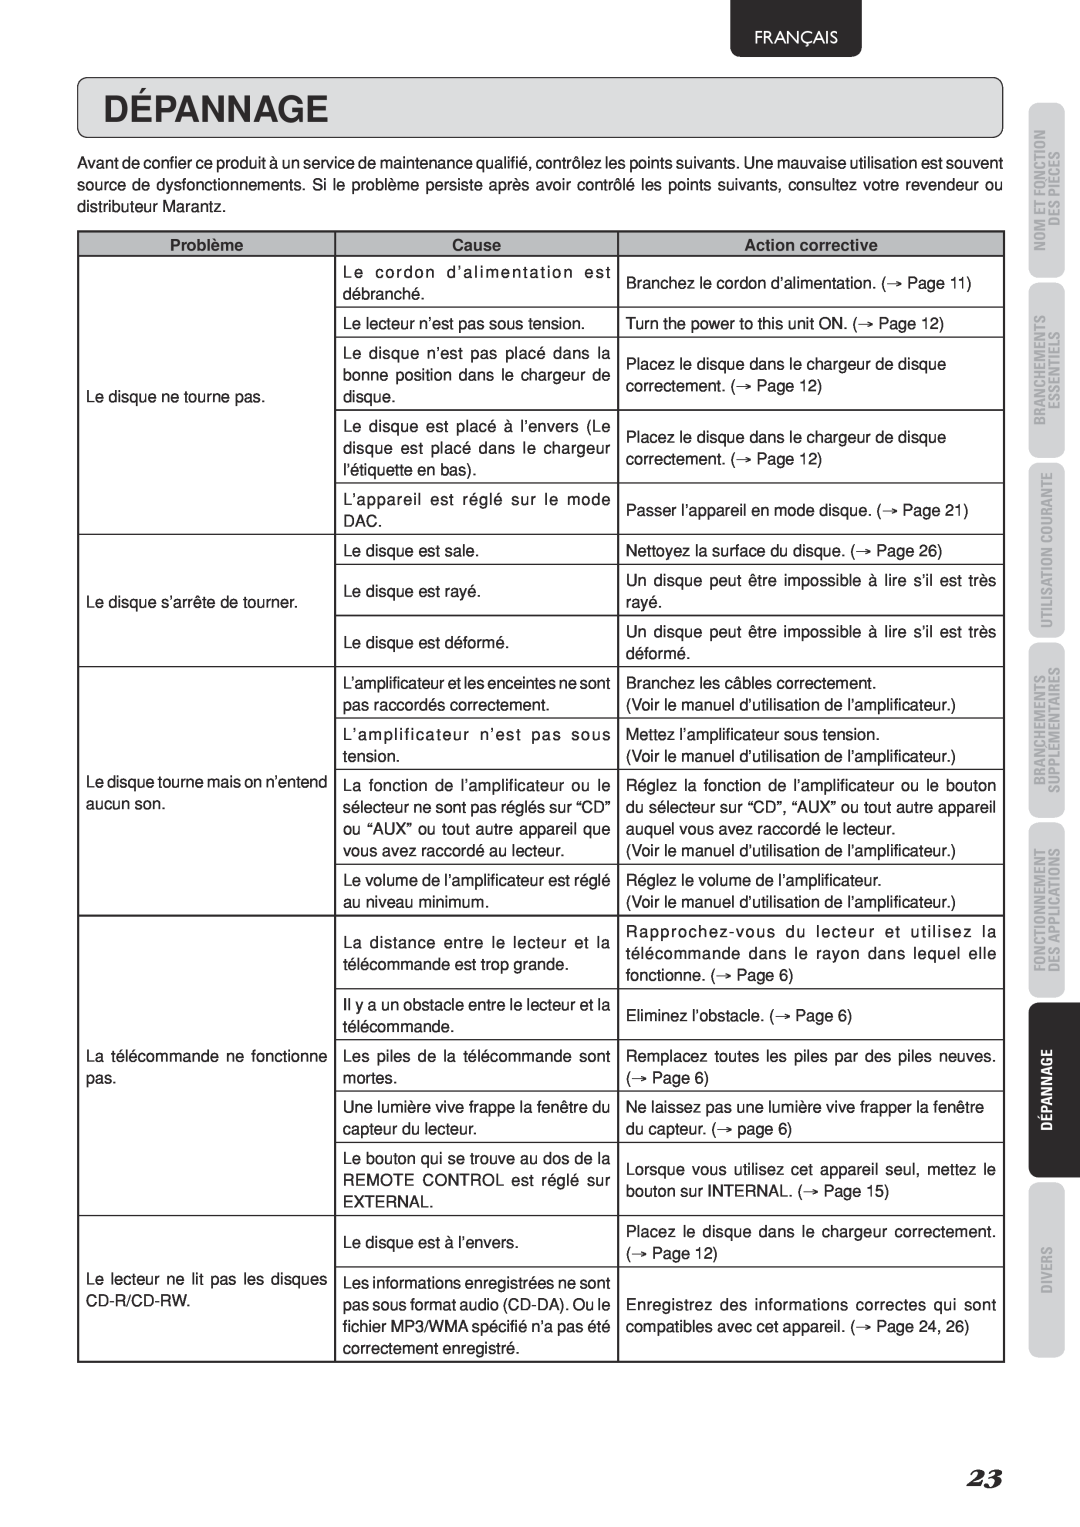 Marantz SA-15S2 manual Dépannage, Français, Problème, Cause, Action corrective 